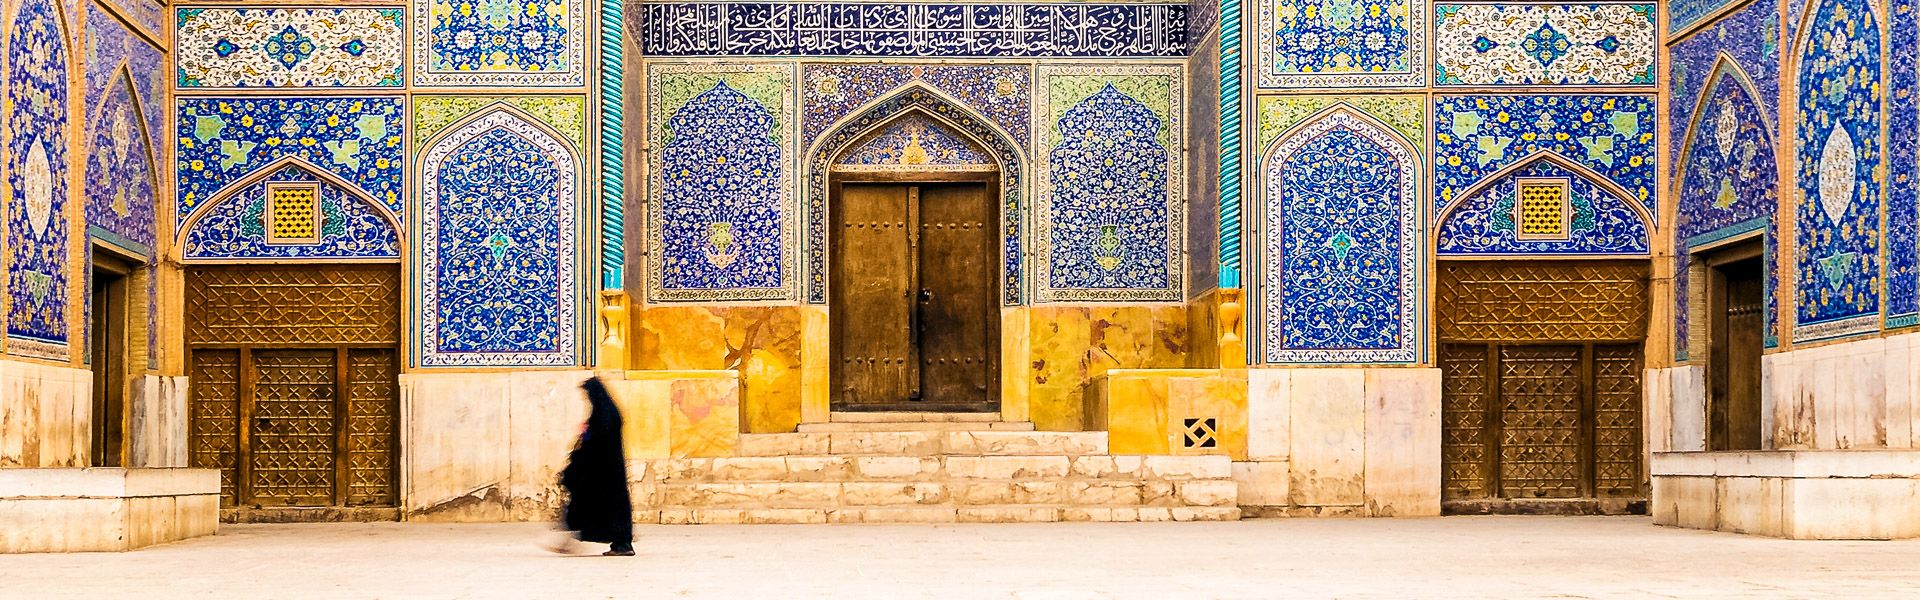 Moschee in Isfahan |  tunart, iStockphoto.com / Chamleon